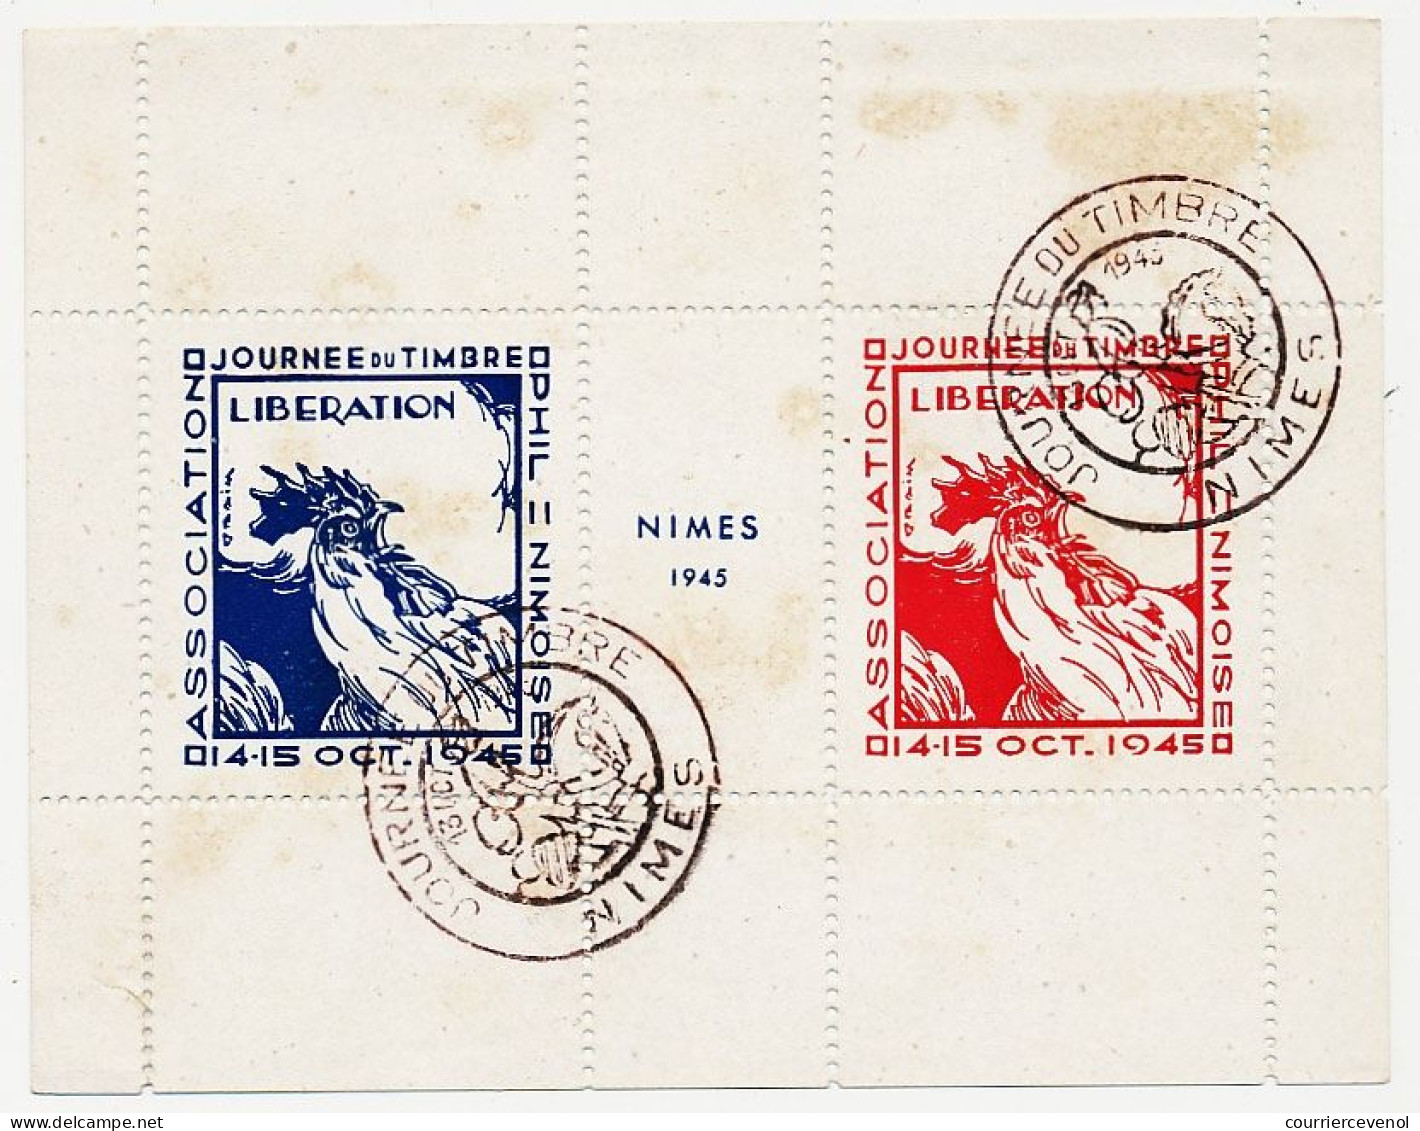 FRANCE => Bloc LIBERATION Dessiné Par Draim (Victor Miard) Journée Du Timbre De Nimes 14/15 Oct 1945 - Briefmarkenmessen